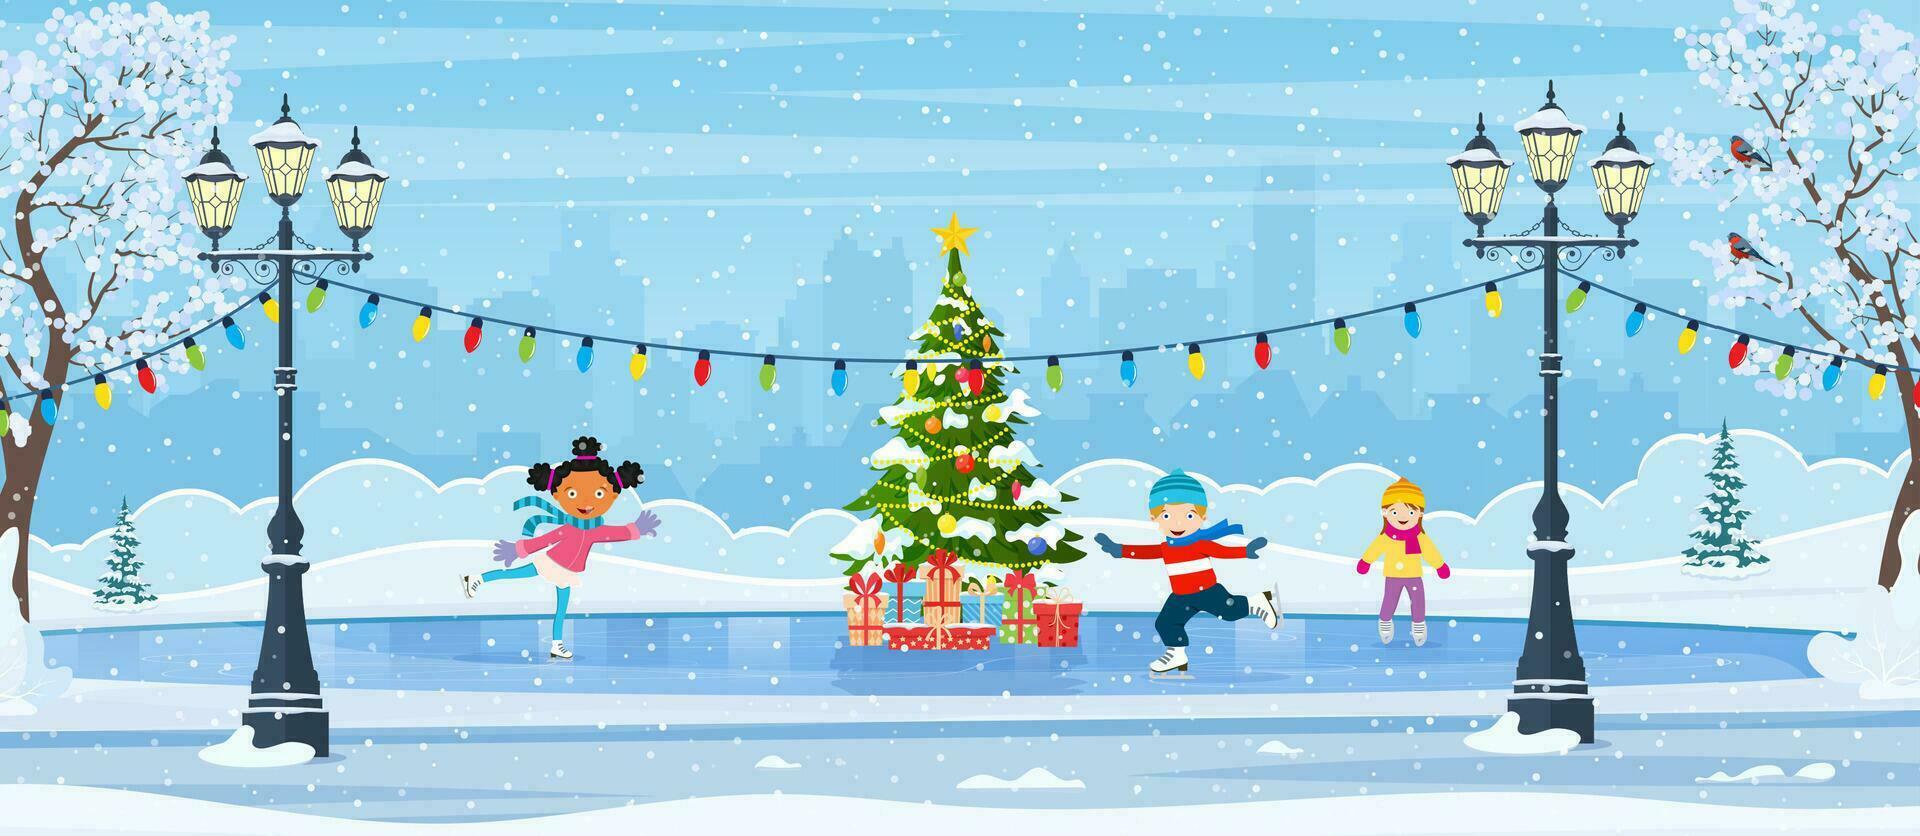 Natale ghiaccio pista con abete albero decorato con illuminazione. inverno scena con pattinando bambini. cartone animato congelato paesaggio. inverno giorno parco scena. vettore illustrazione nel piatto stile